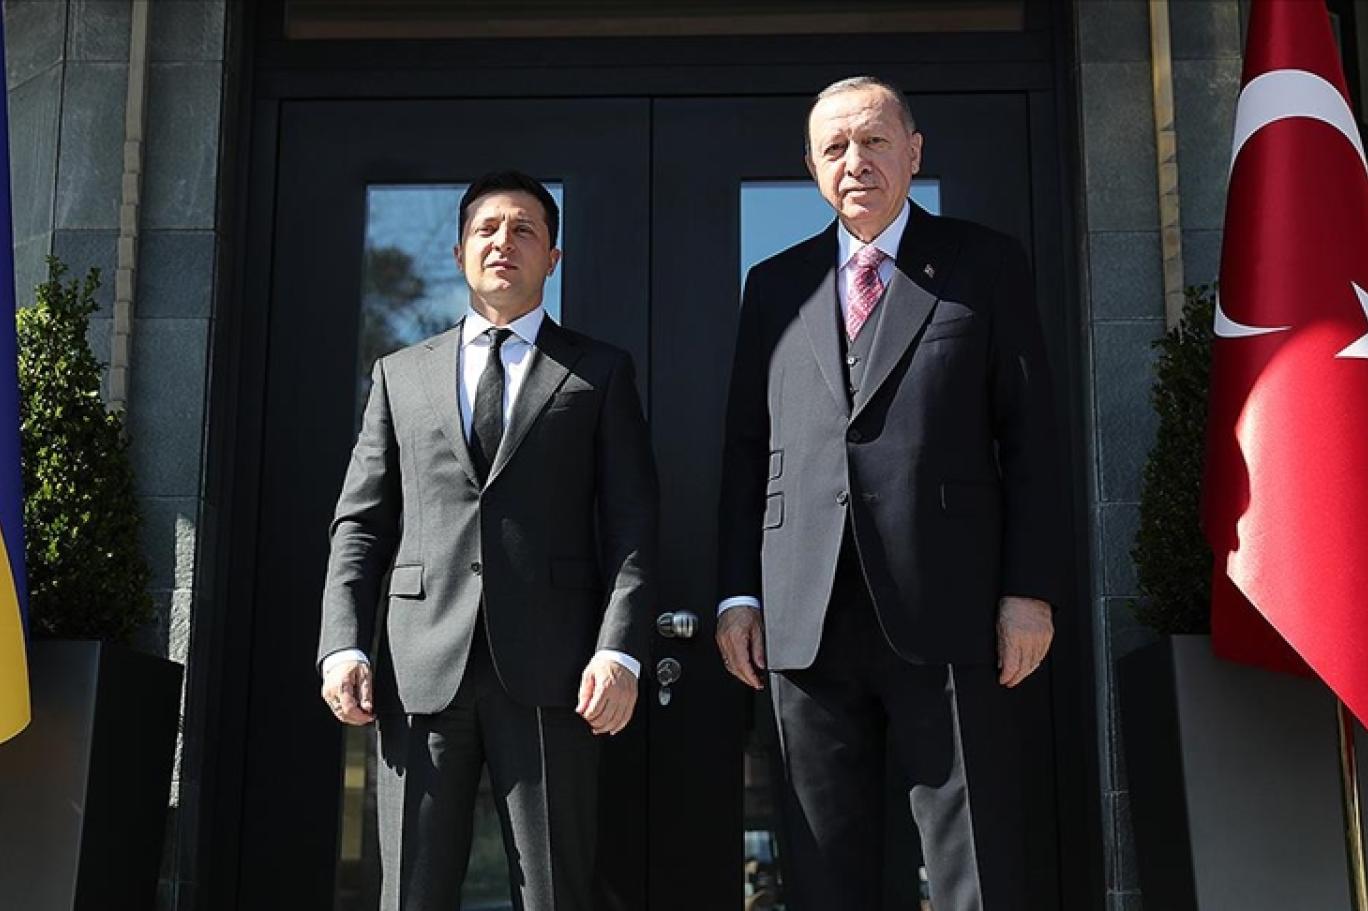 Erdoğan Zelenski ile görüştü